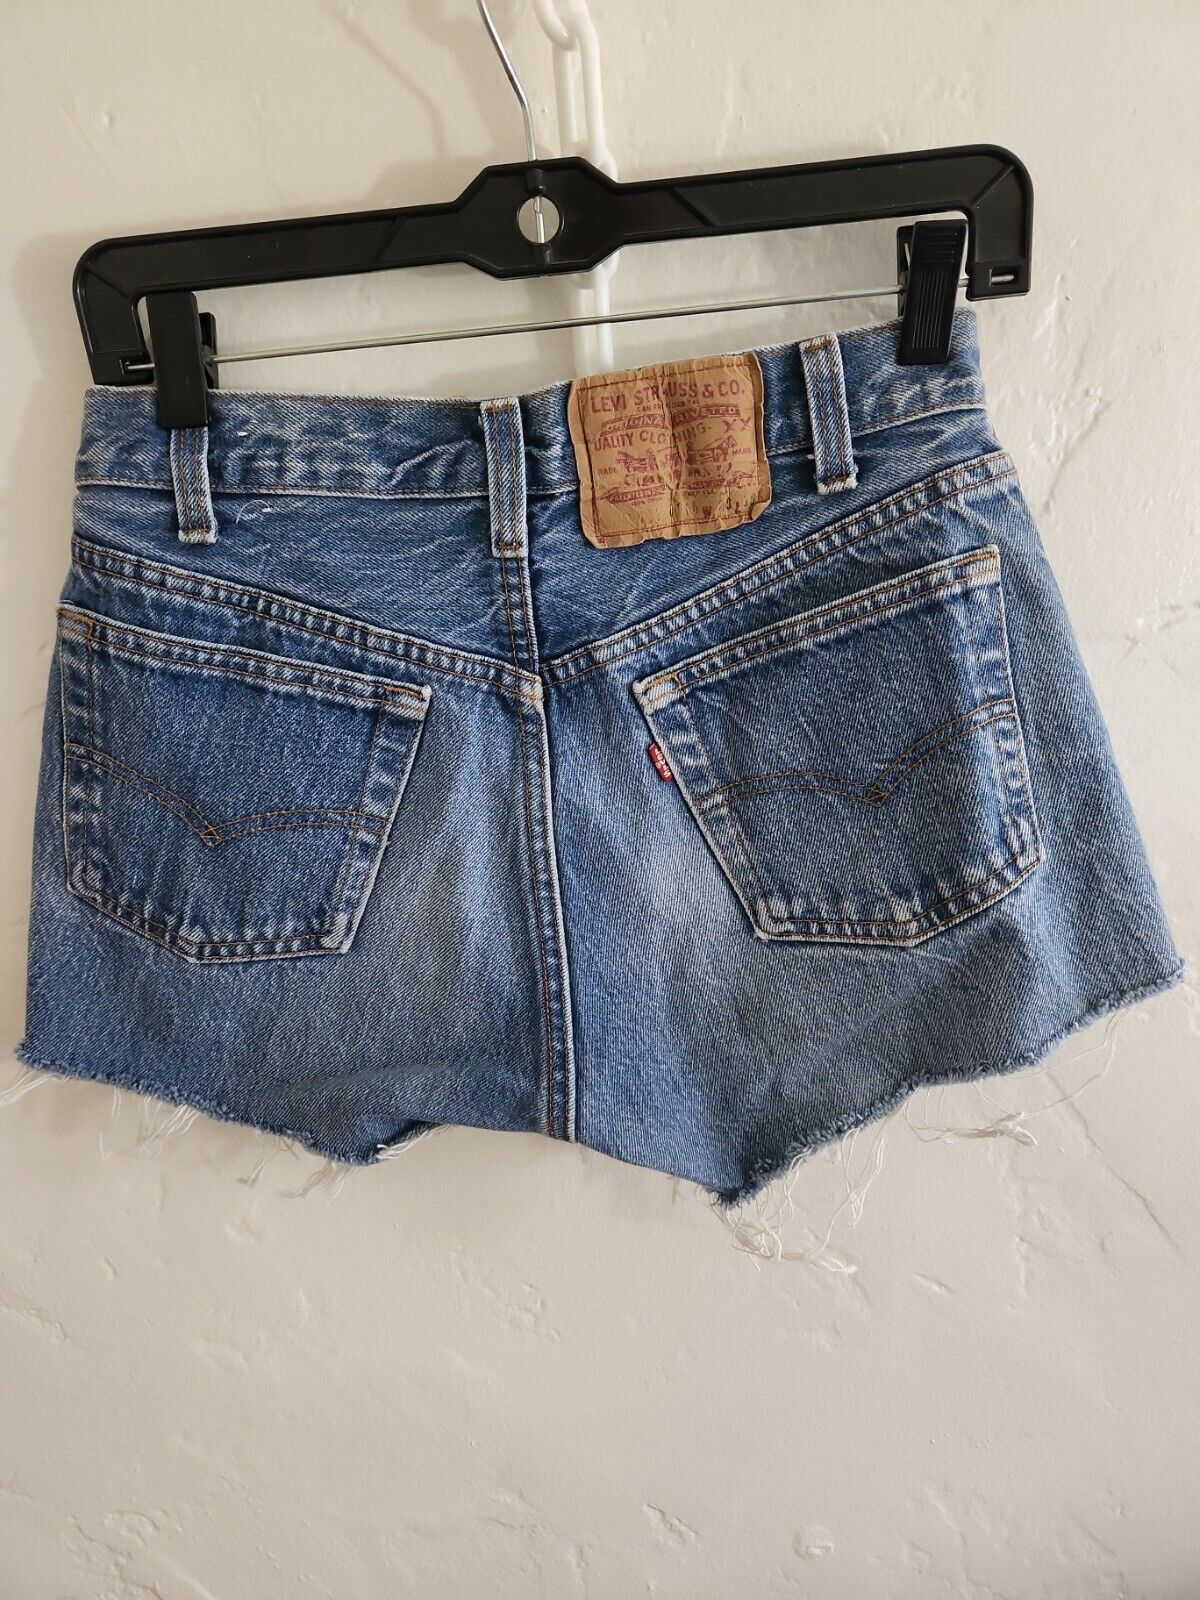 vintage levis cut-offs denim jean shorts button f… - image 4